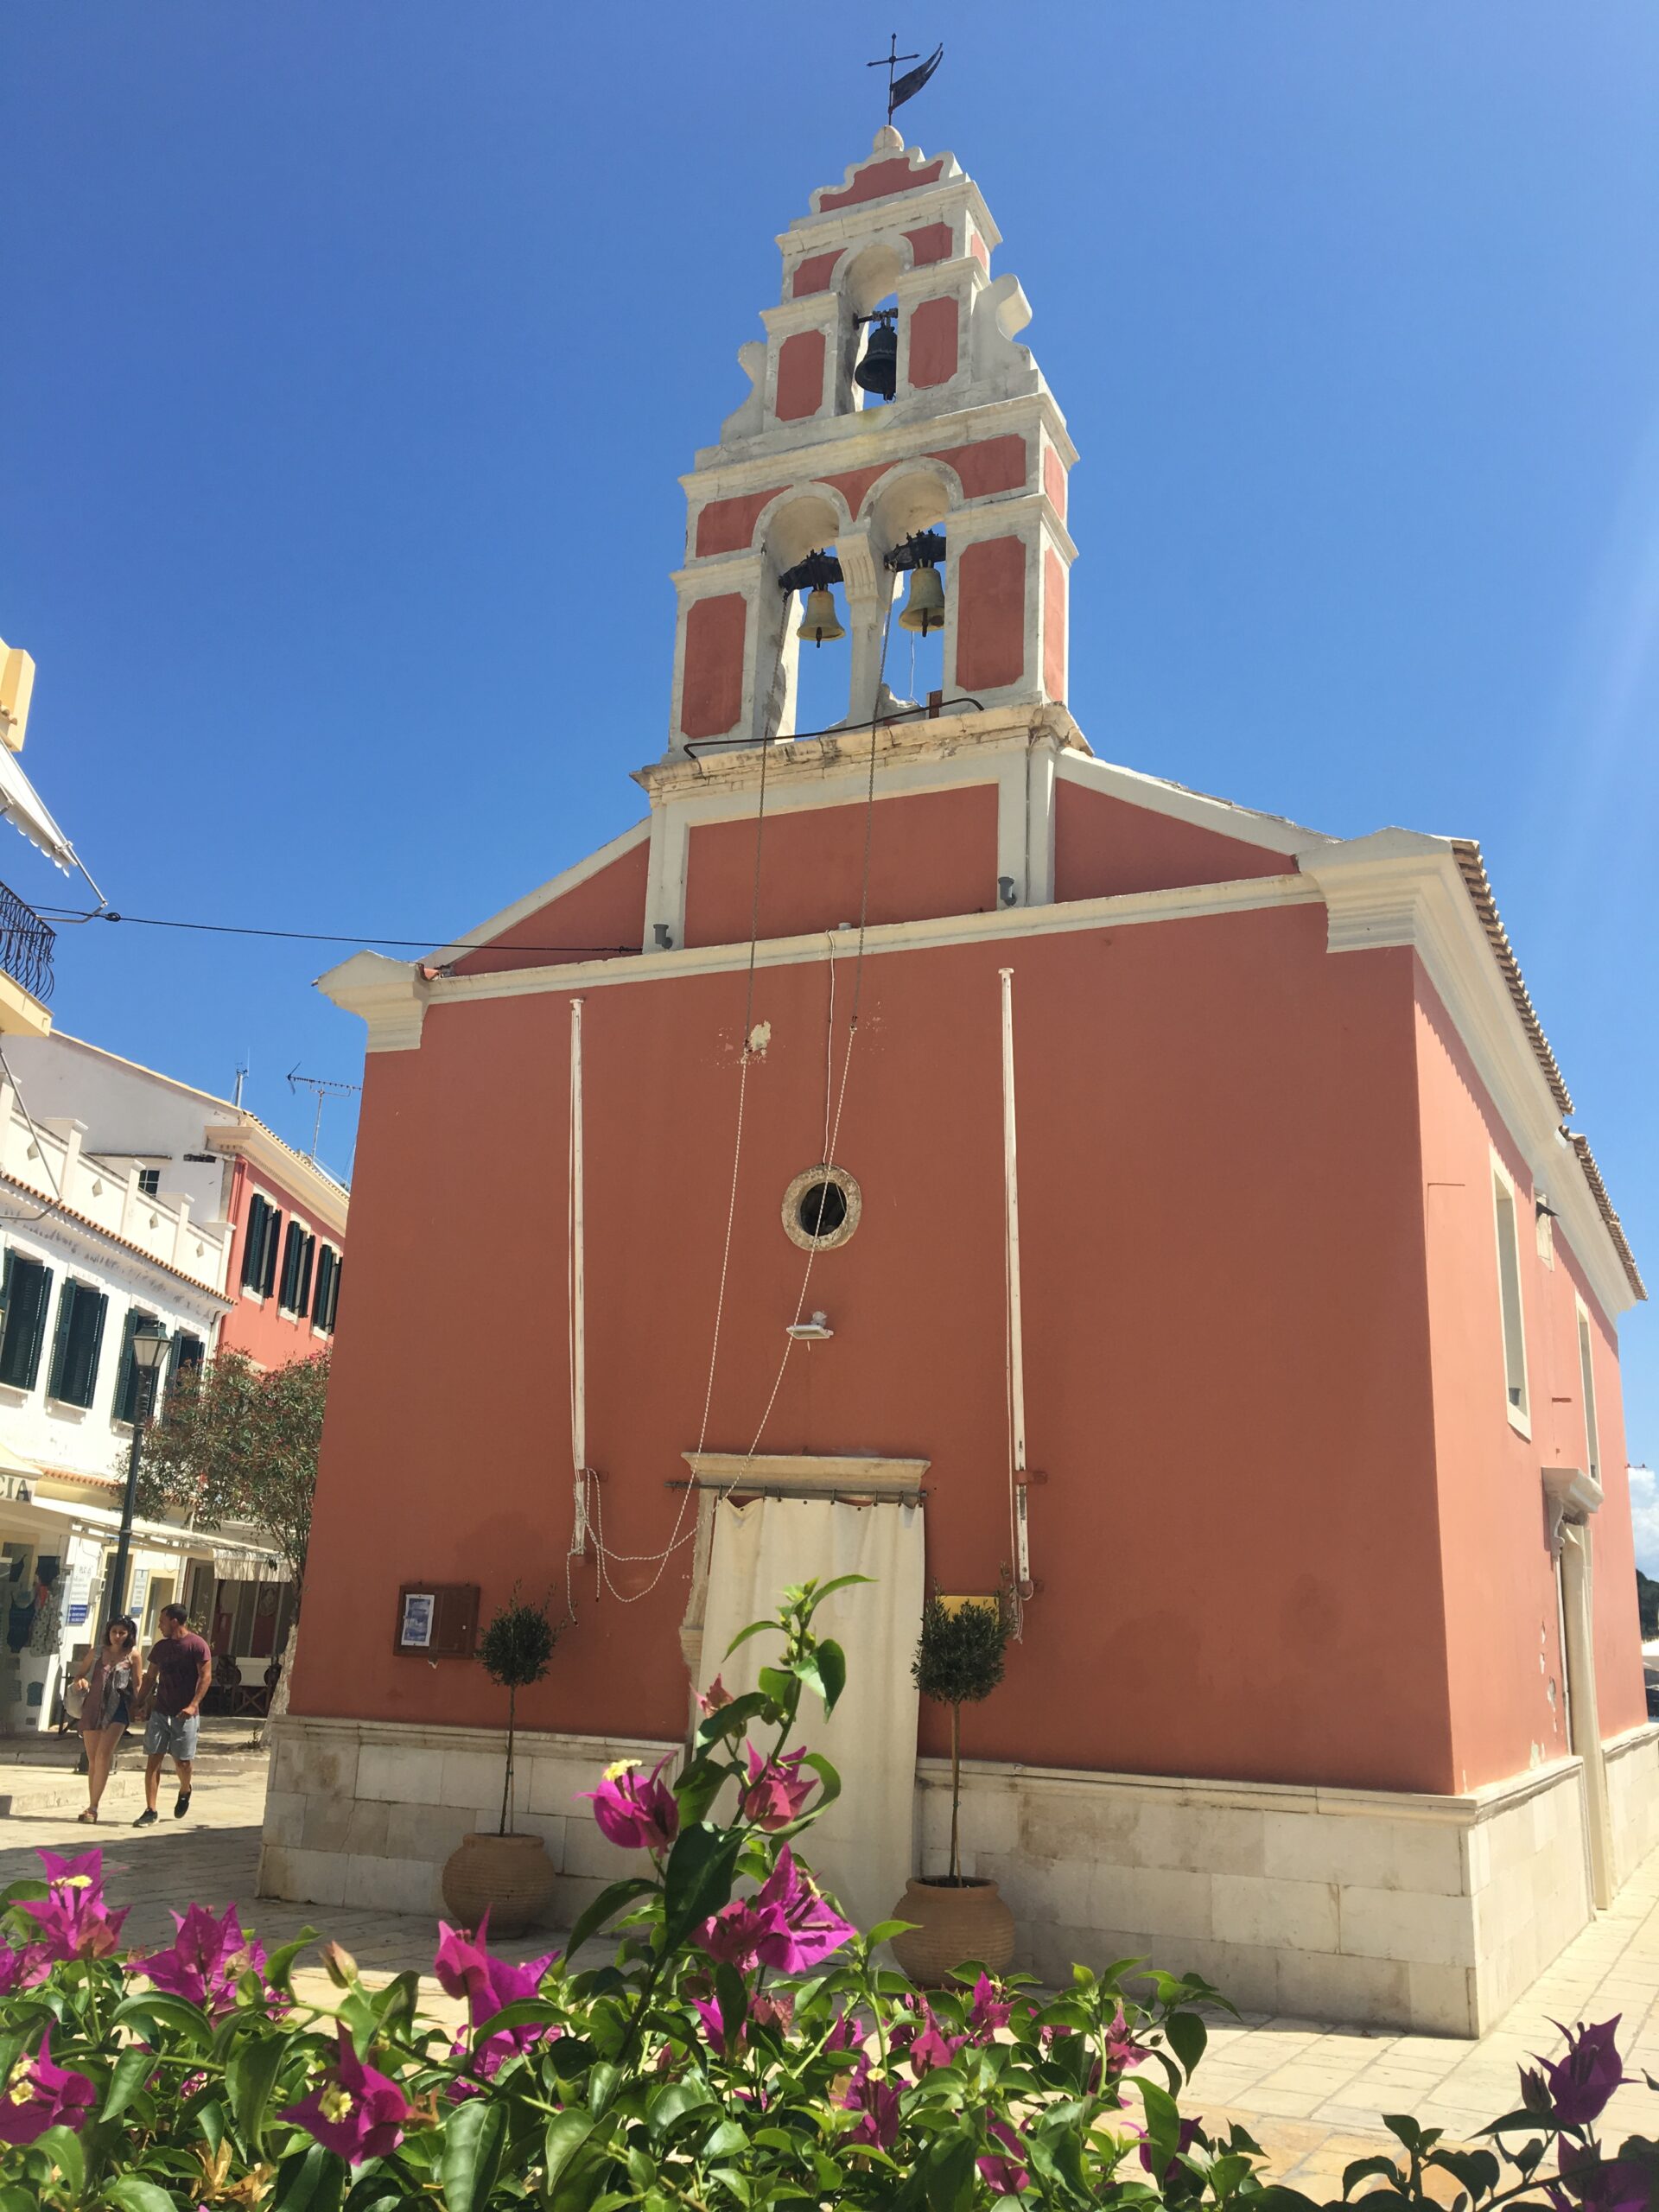 paxos gaios church main square